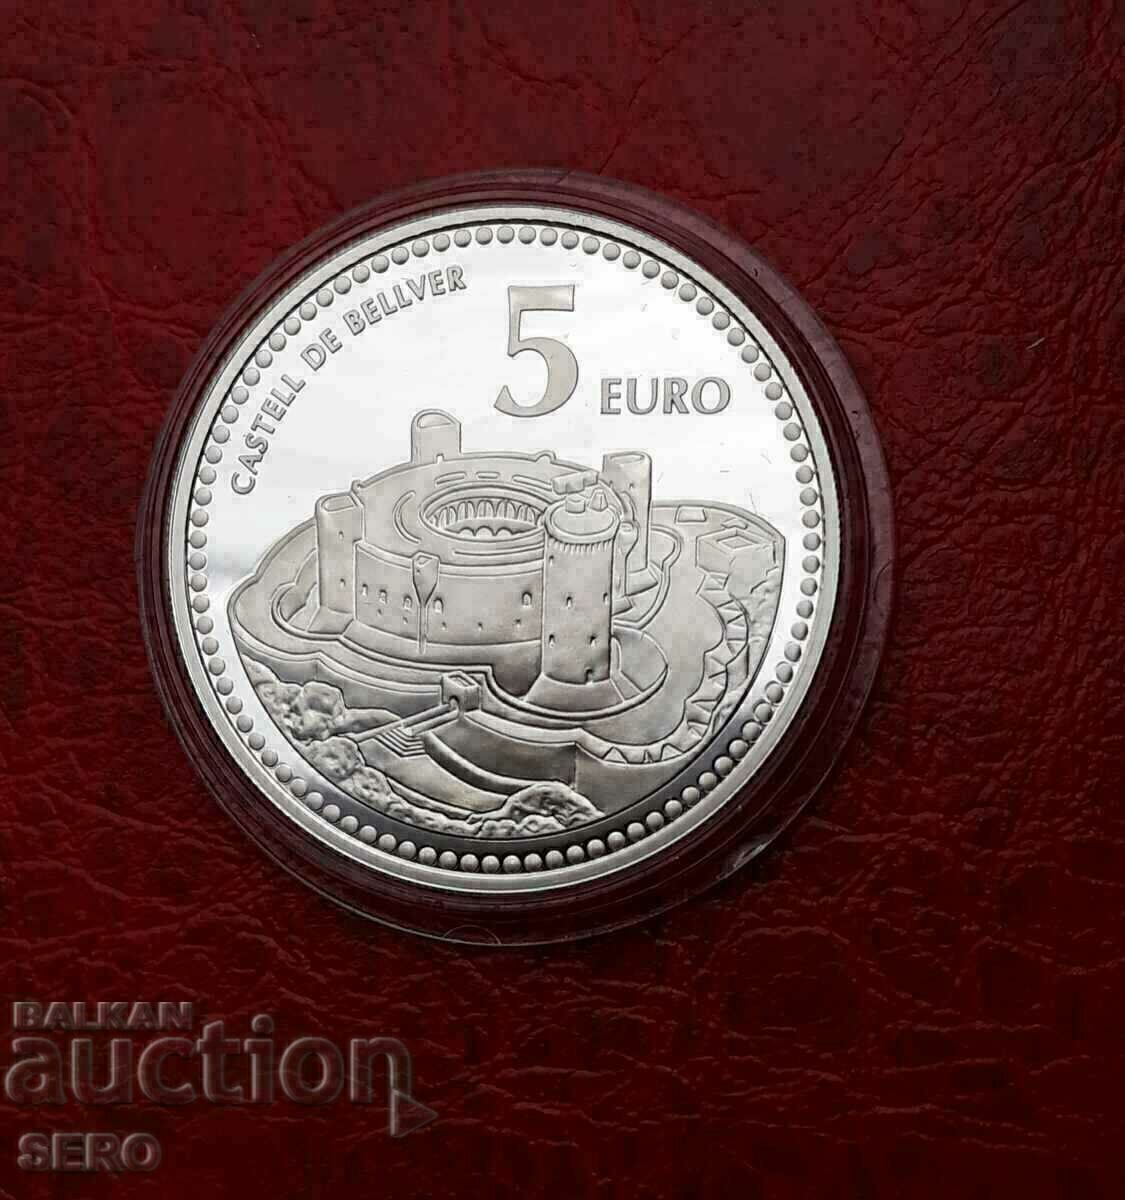 Spain-5 euro 2011-silver-very rare-circulation 20,000 pieces